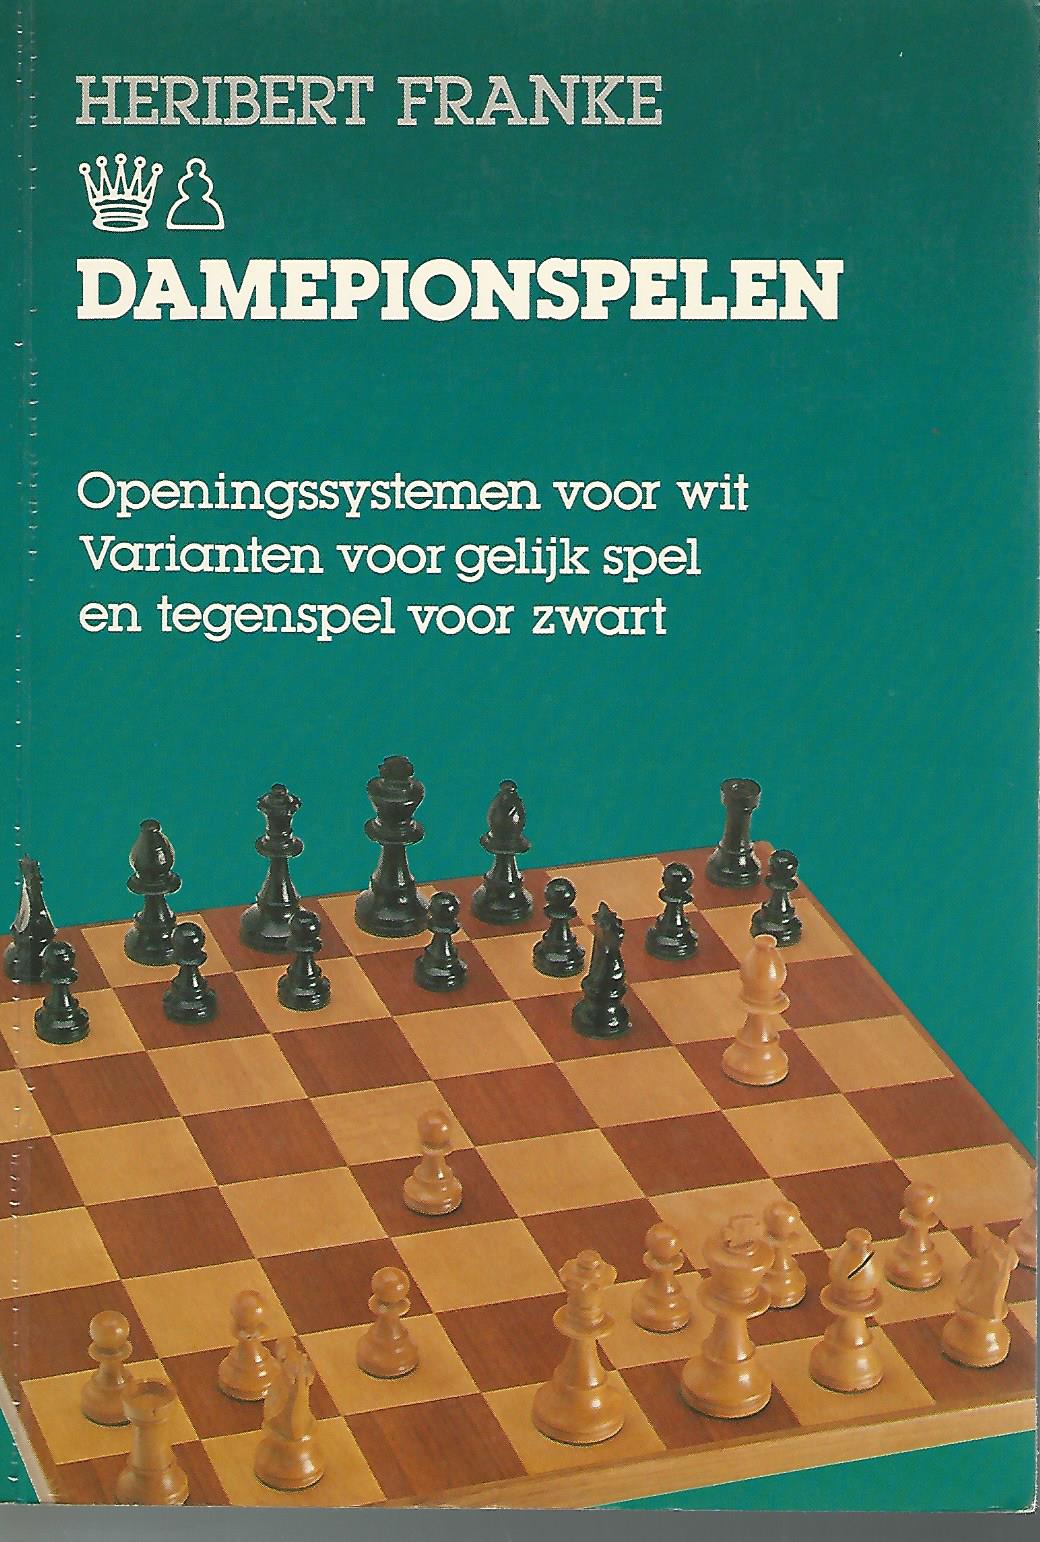 Franke, Heribert - Damepionspelen -Openingssystemen voor wit. Varianten voor gelijk spel en tegenspel voor zwart